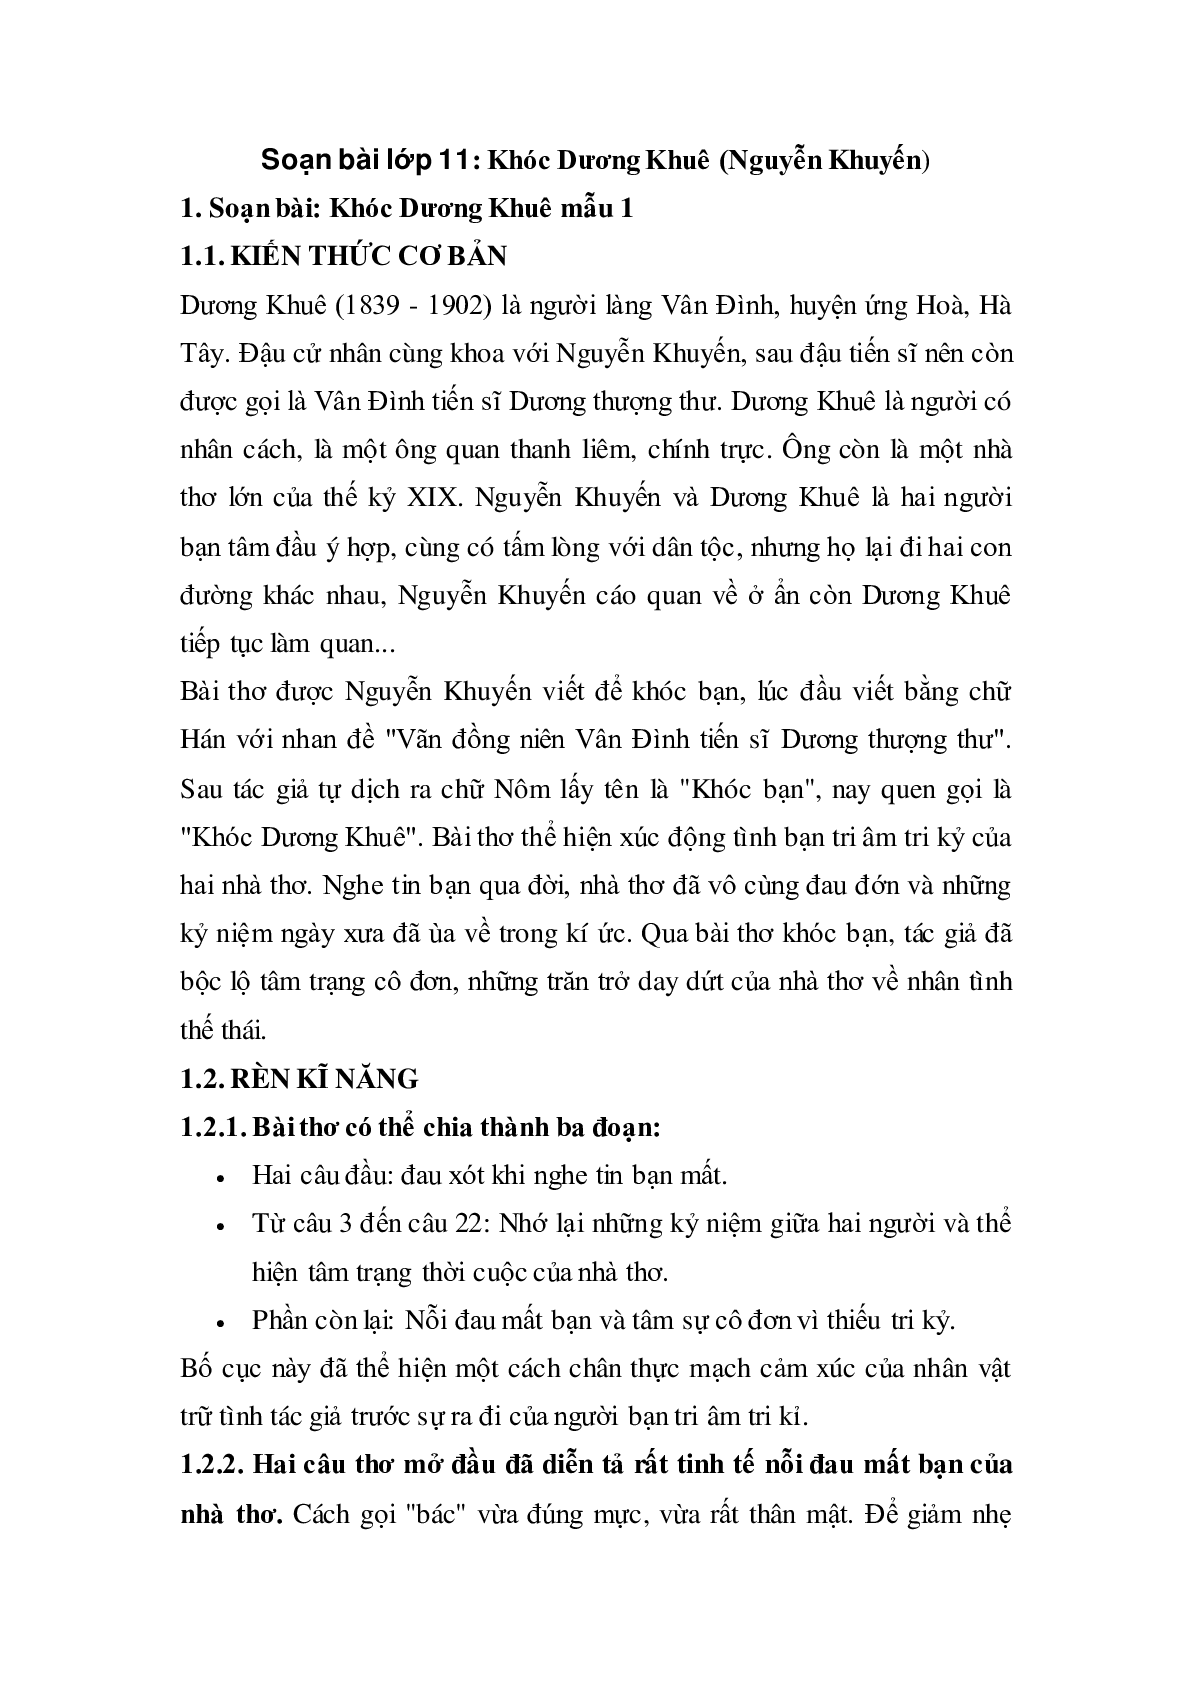 Soạn bài Khóc Dương Khuê - ngắn nhất Soạn văn 11 (trang 1)